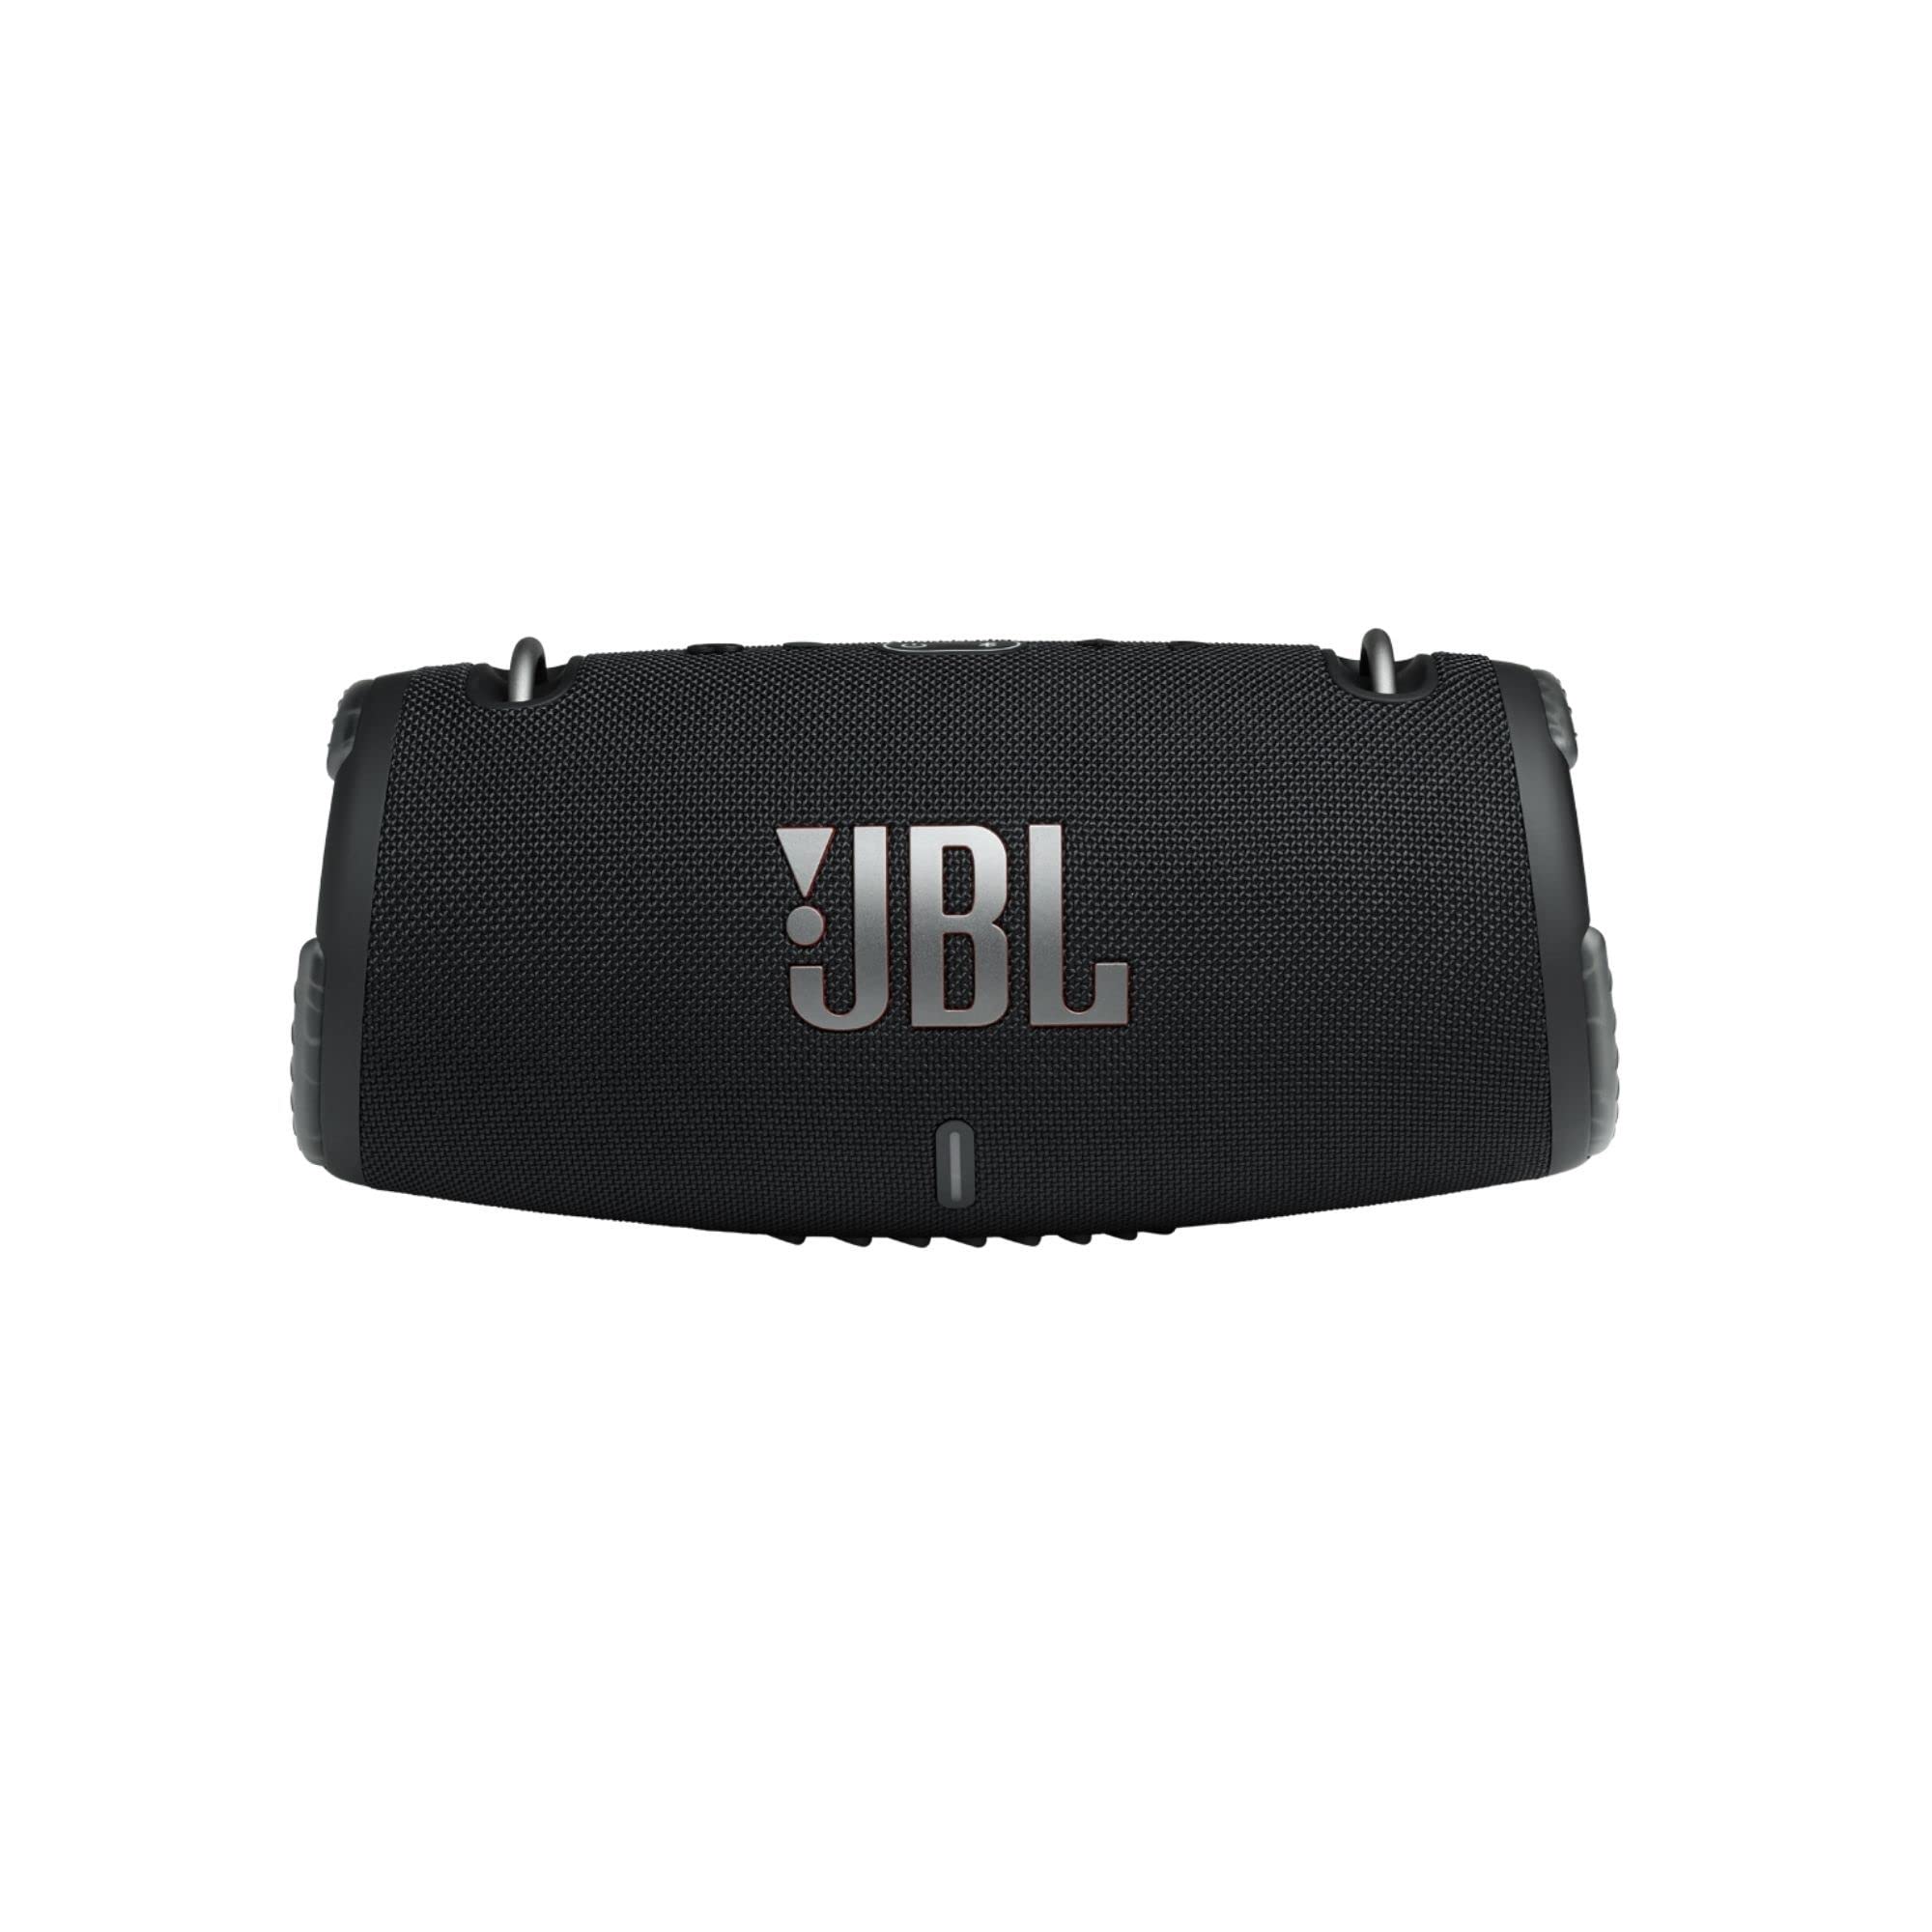 JBL Xtreme 3 - مكبر صوت بلوتوث محمول مع IP67 مقاوم للما...